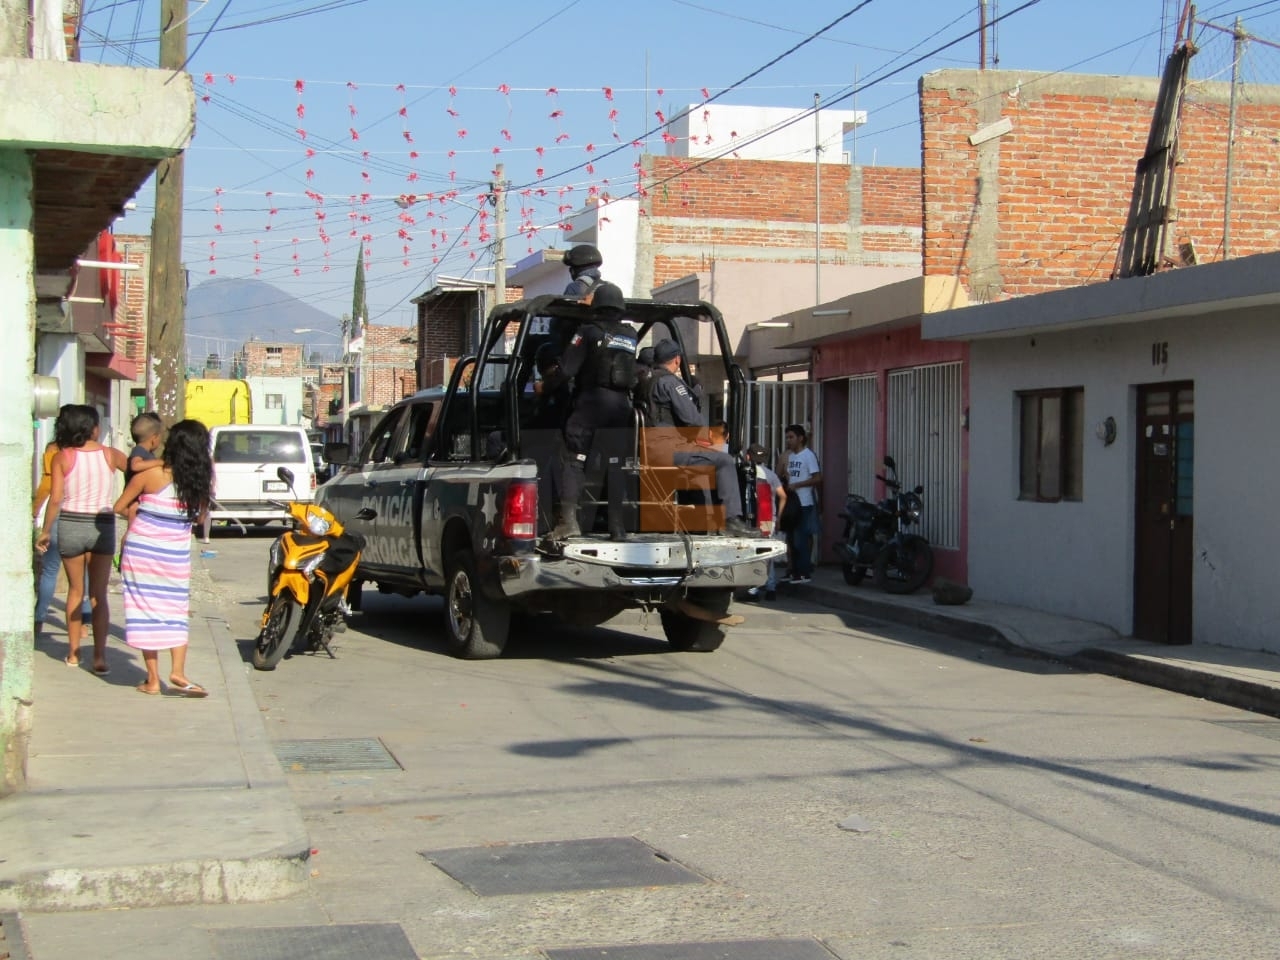 Hombres alcoholizados agreden a golpes a una mujer y a sus 3 hijos en Zitácuaro, Michoacán